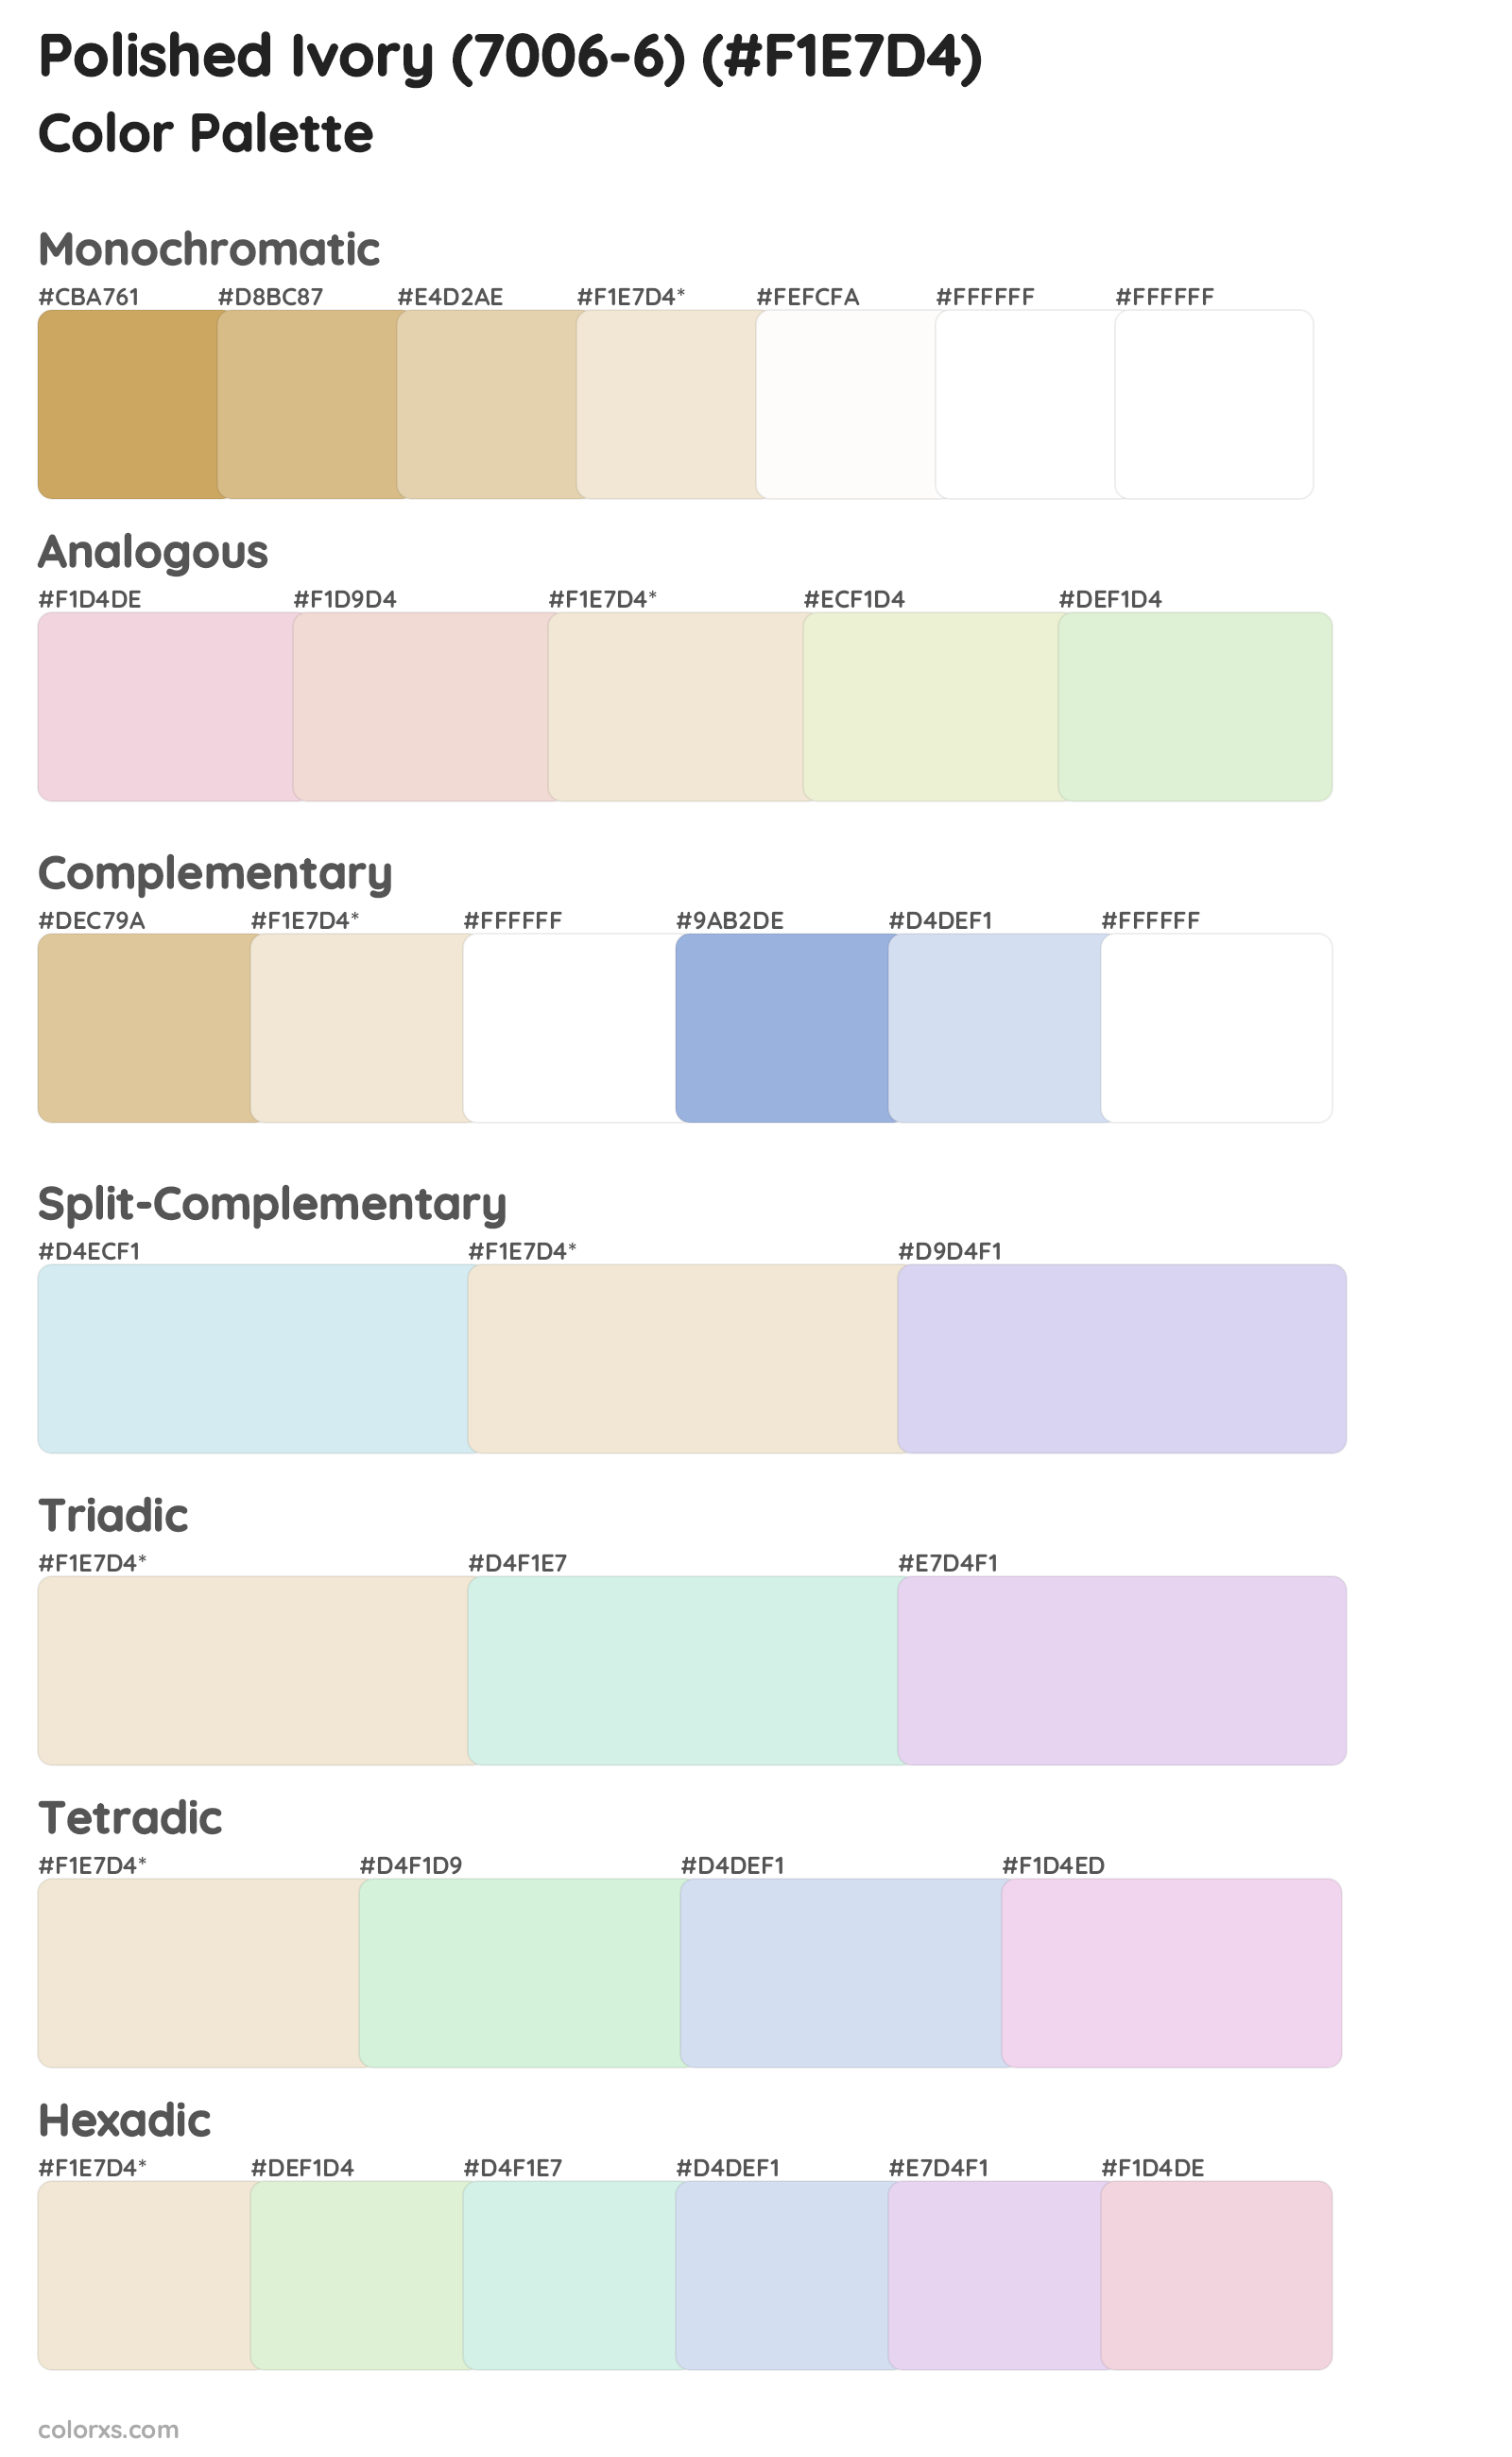 Polished Ivory (7006-6) Color Scheme Palettes